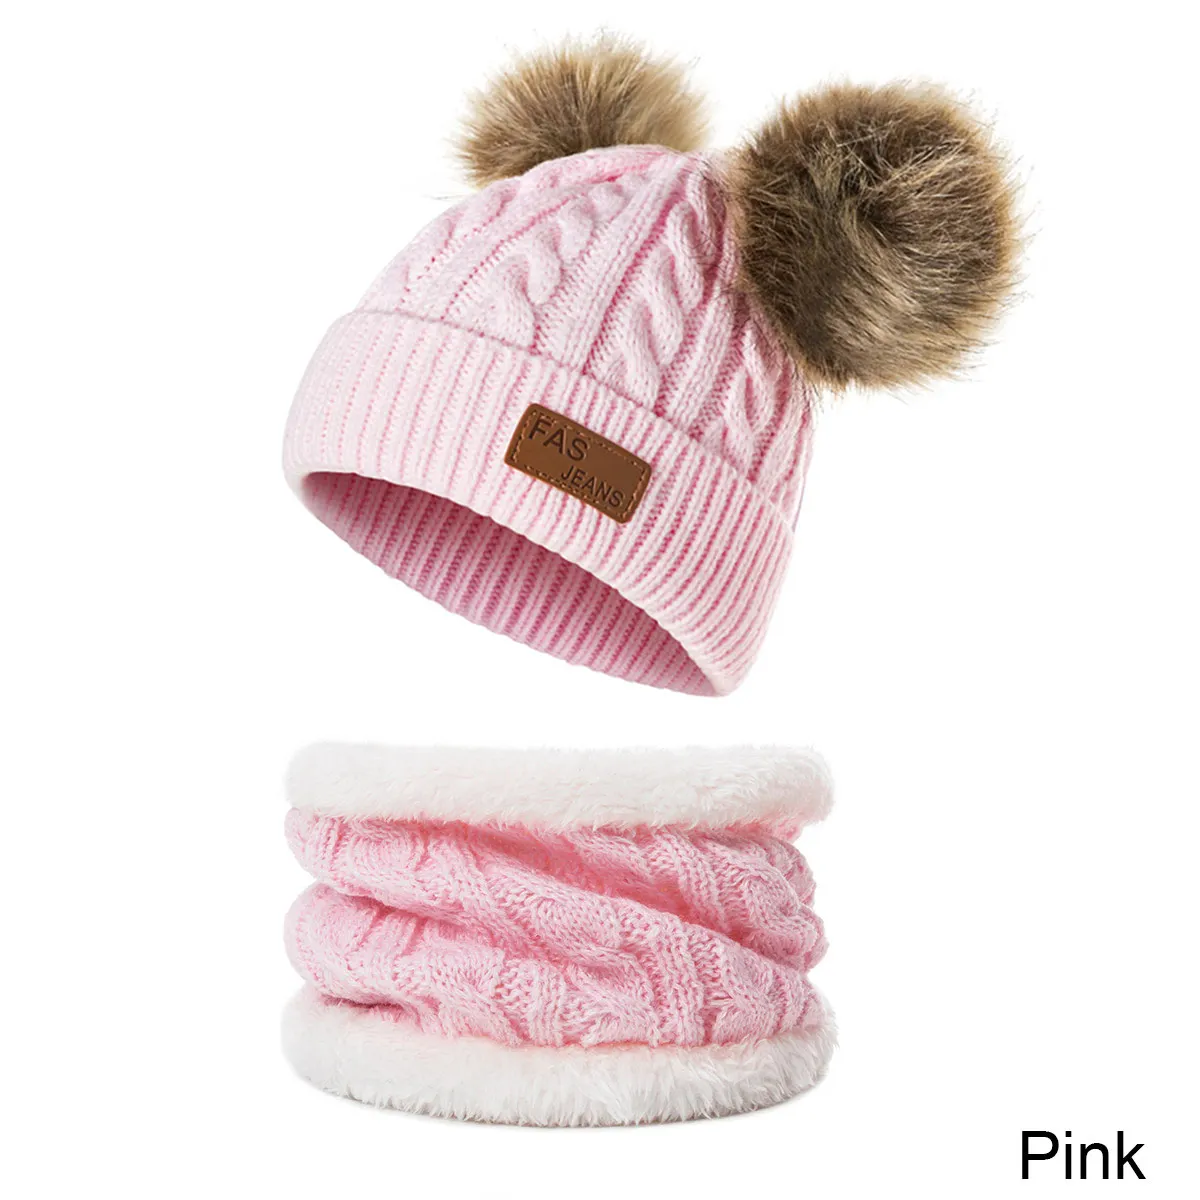 Новая детская зимняя шапка, шарф, комплект для мальчиков и девочек, теплые вязаные вещи для зимы, шапка, однотонный плотный вельветовый шарф для детей 0-3 лет - Цвет: pink